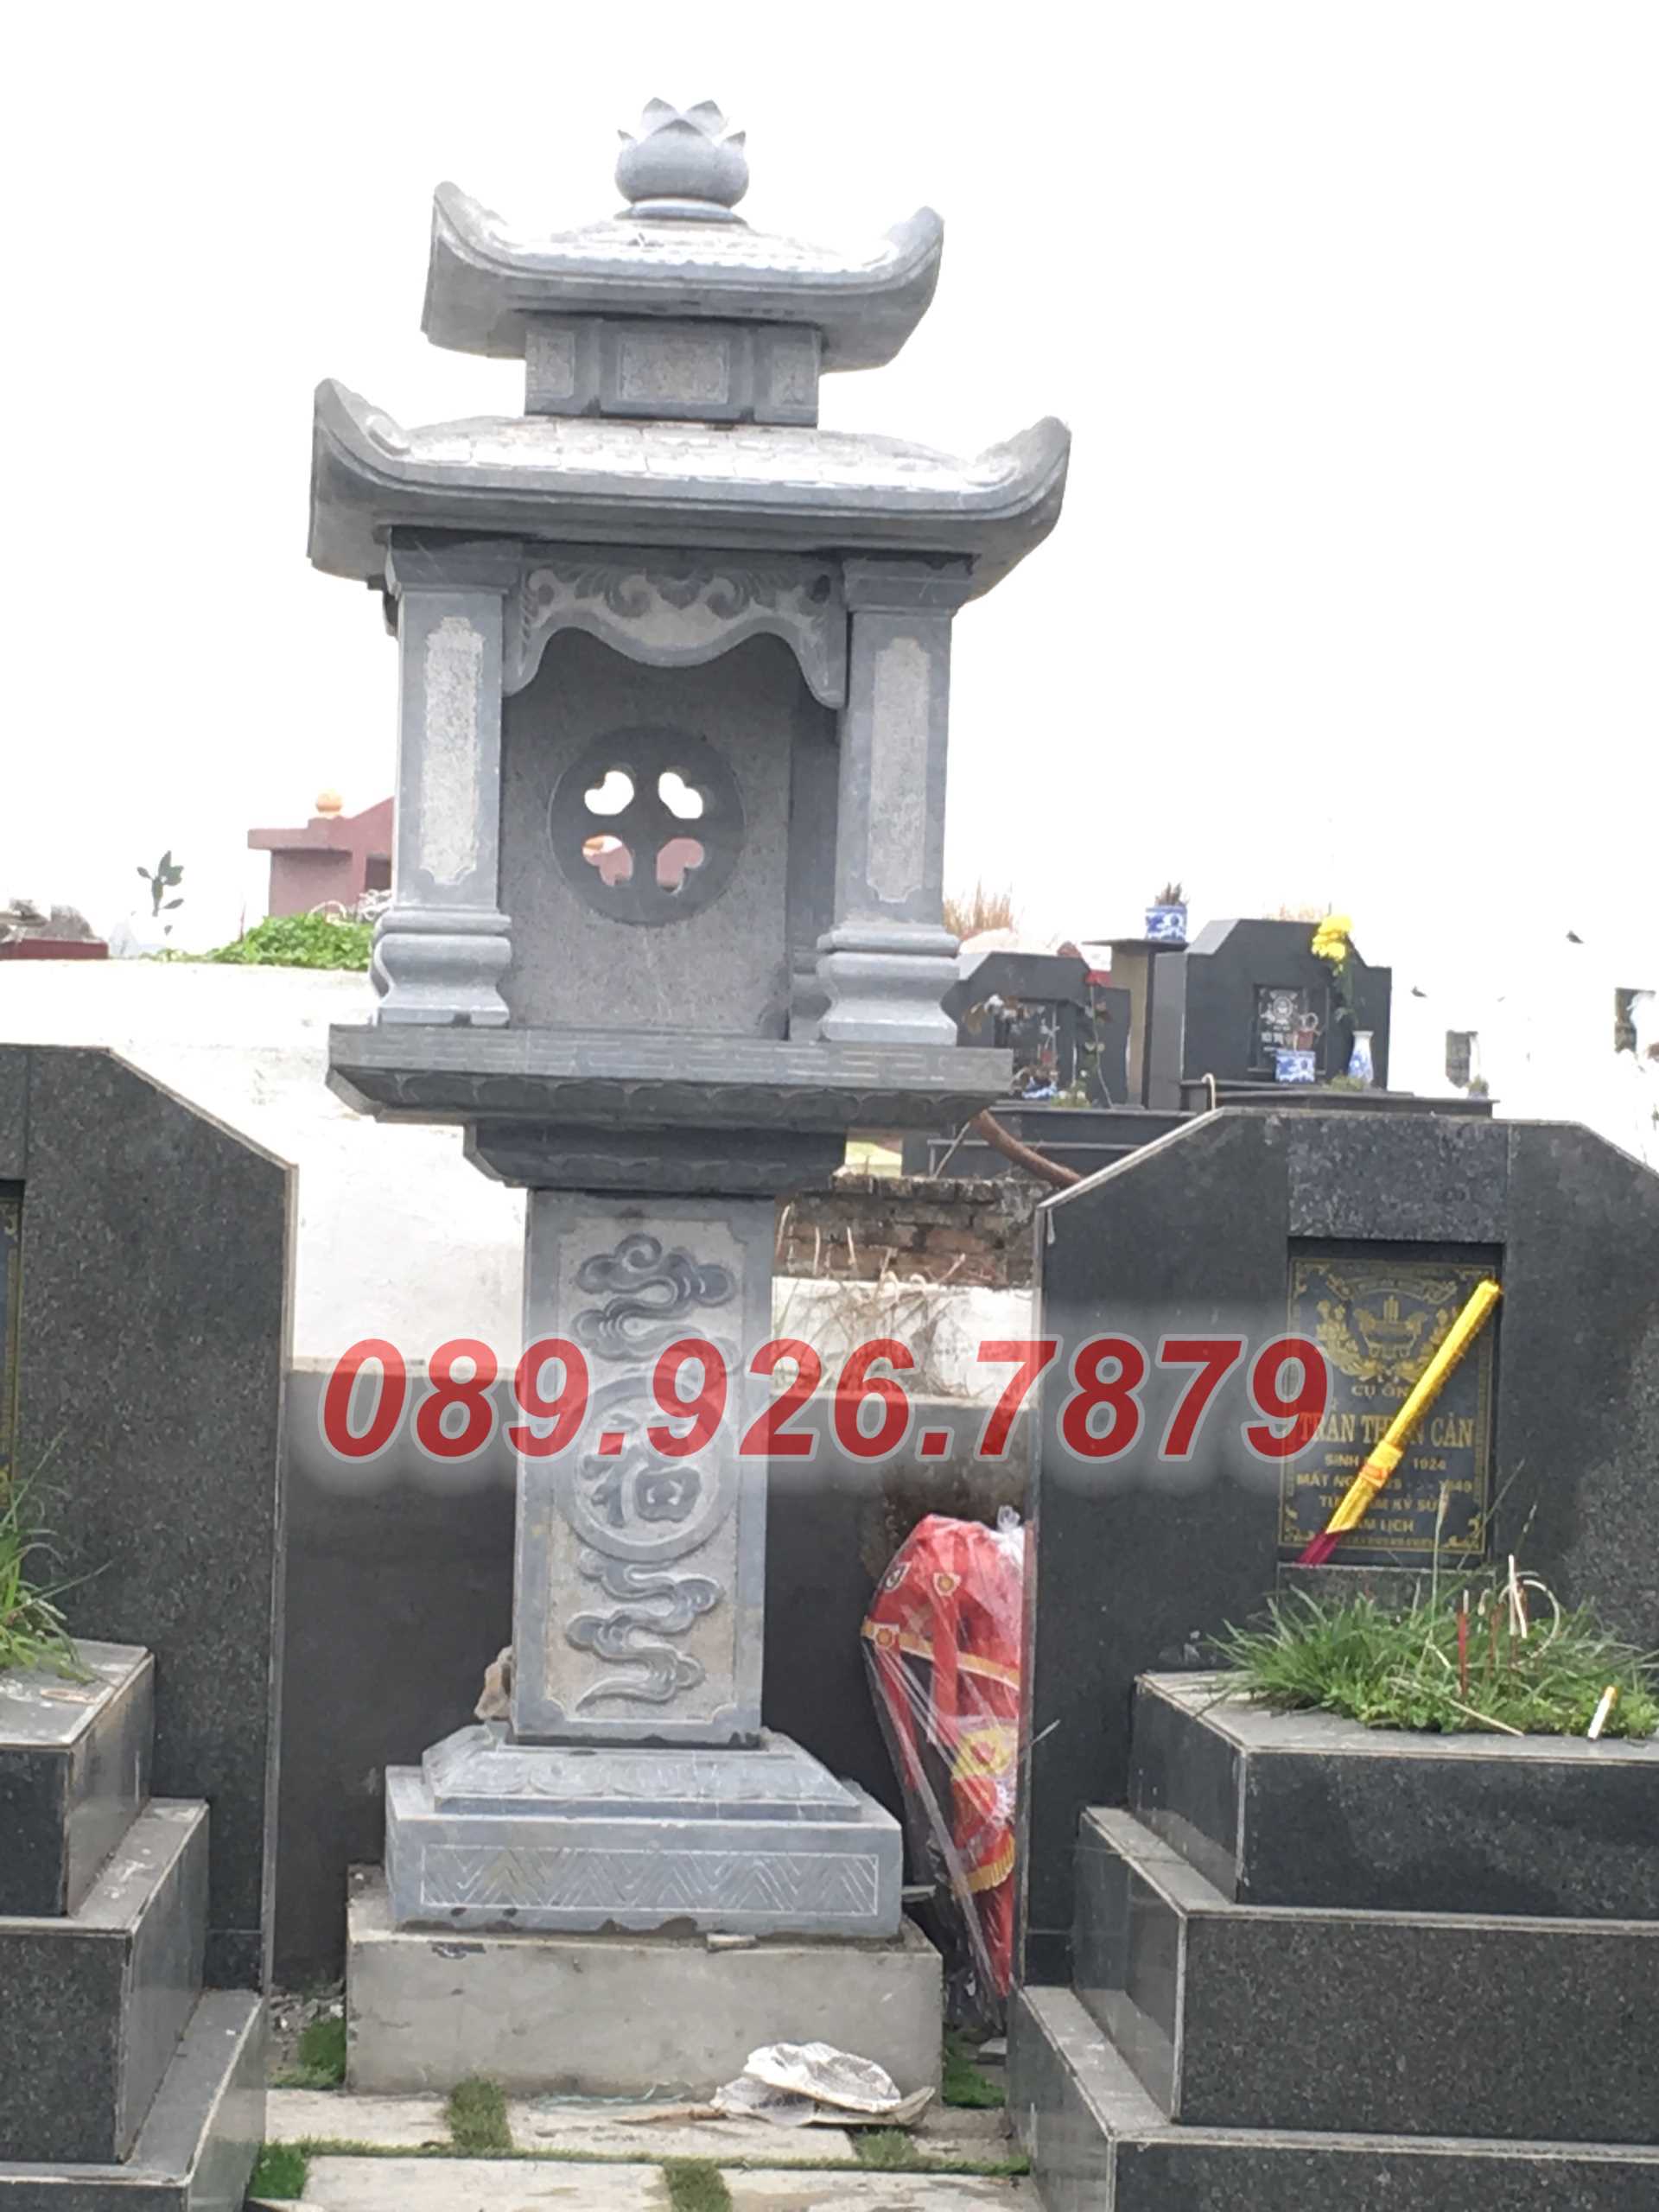 Am thờ đá - Mẫu miếu thờ để tro cốt ngoài trời bán Hồ Chí Minh